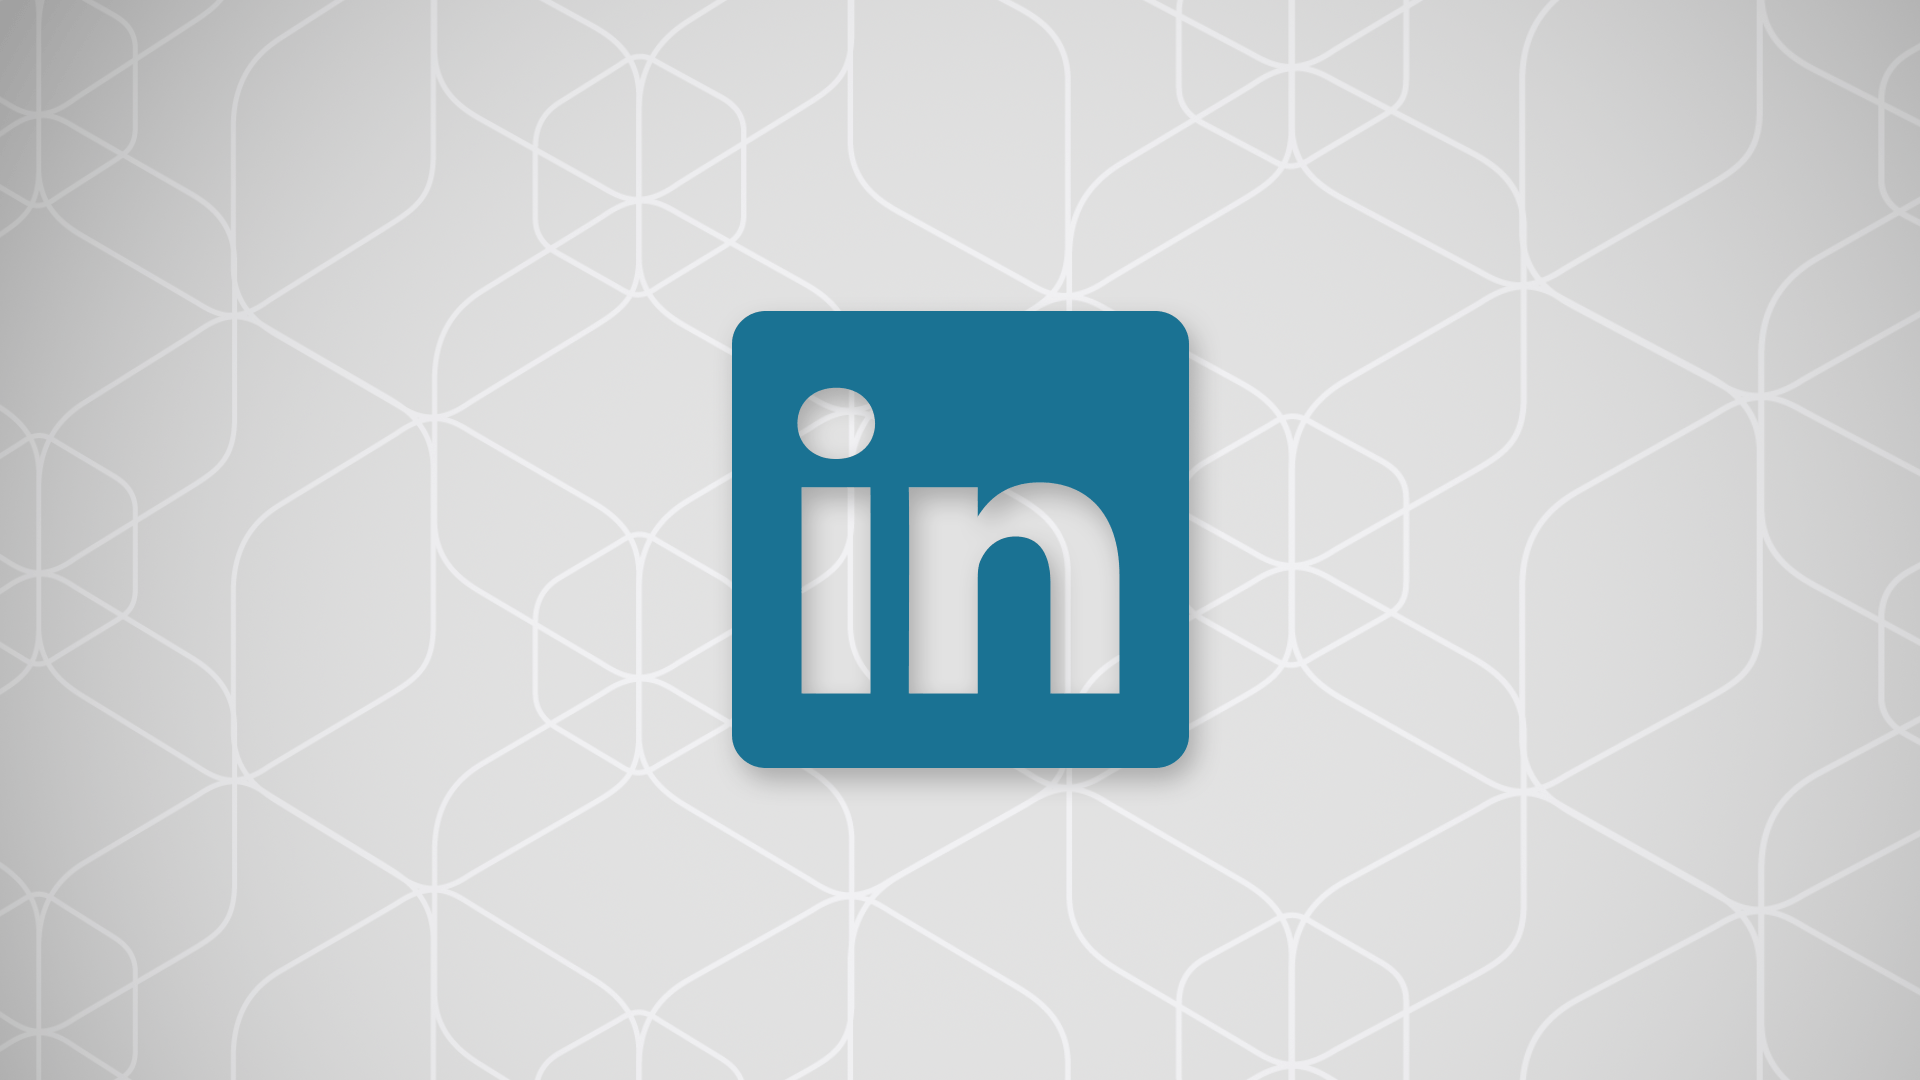 LinkedIn Emblem Logo Wallpaper 65636 1920x1080px